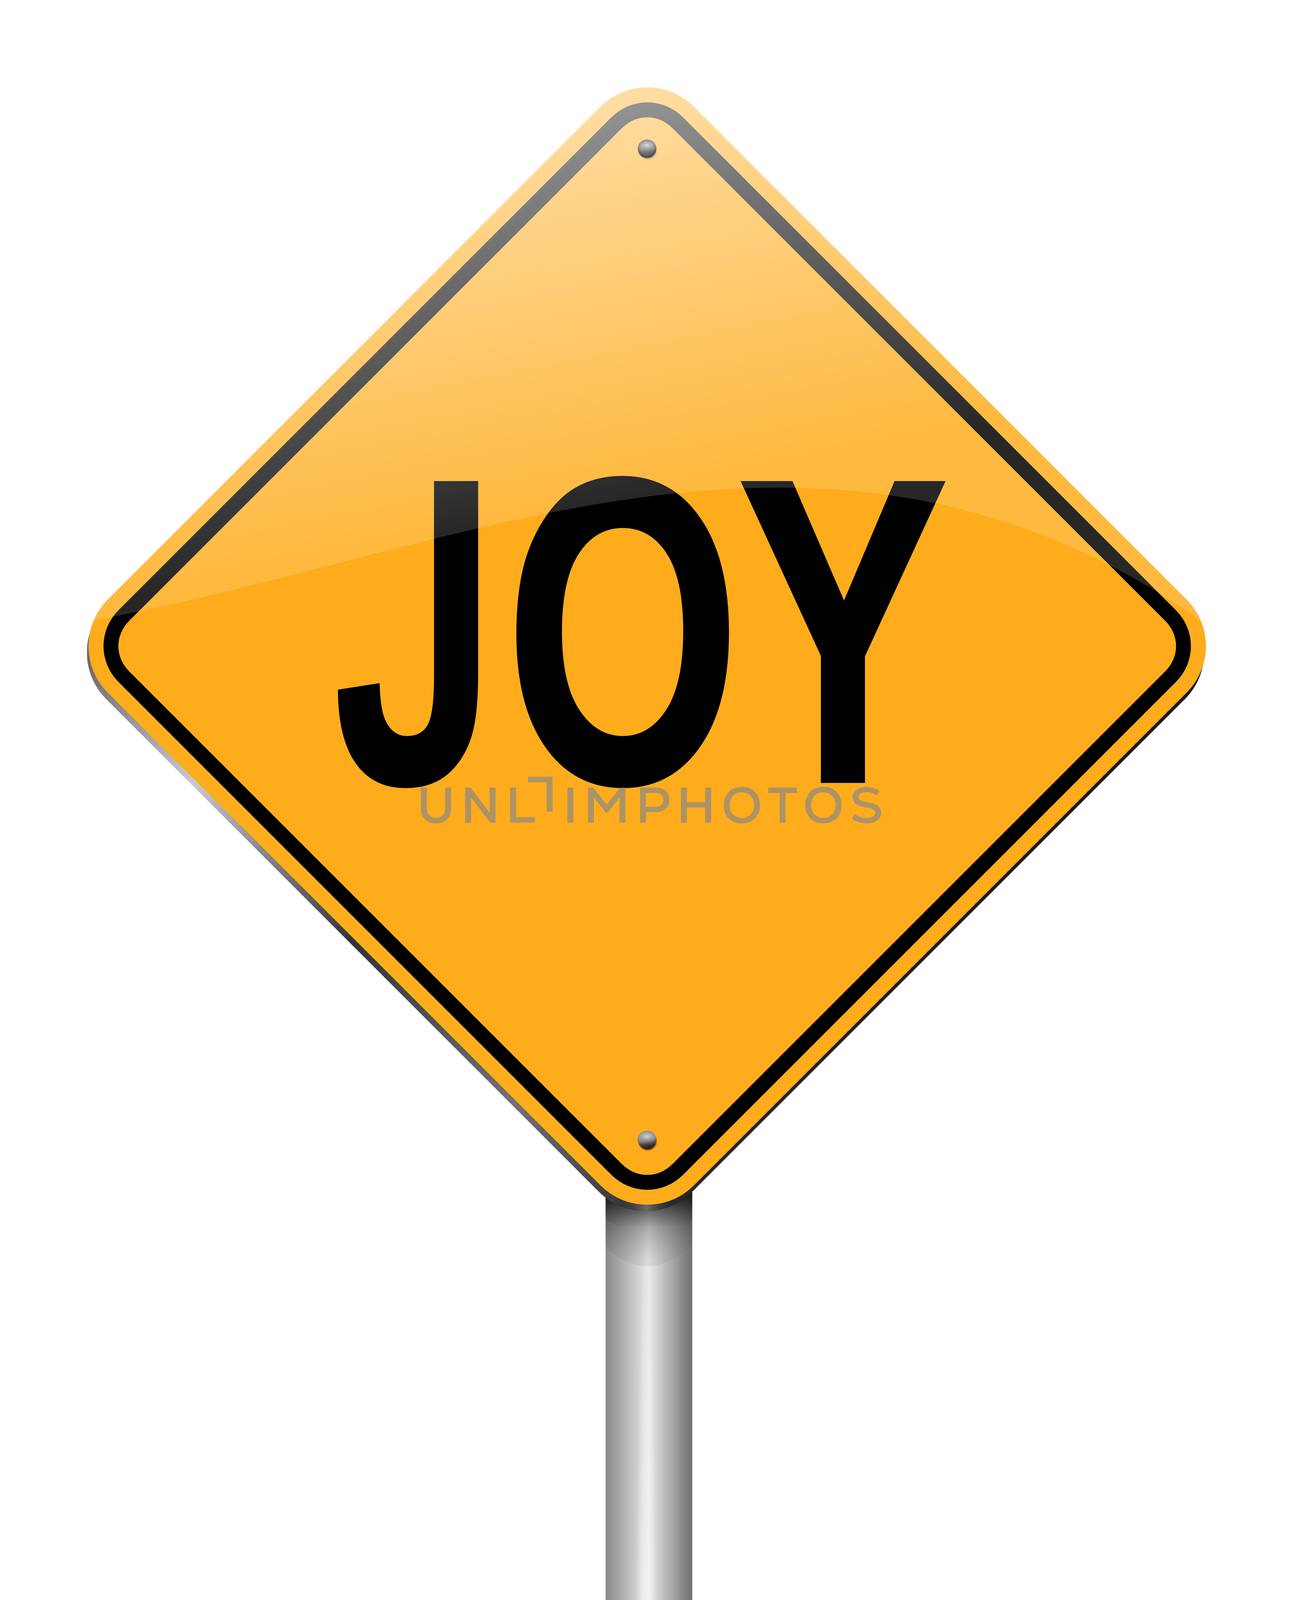 Joy concept. by 72soul